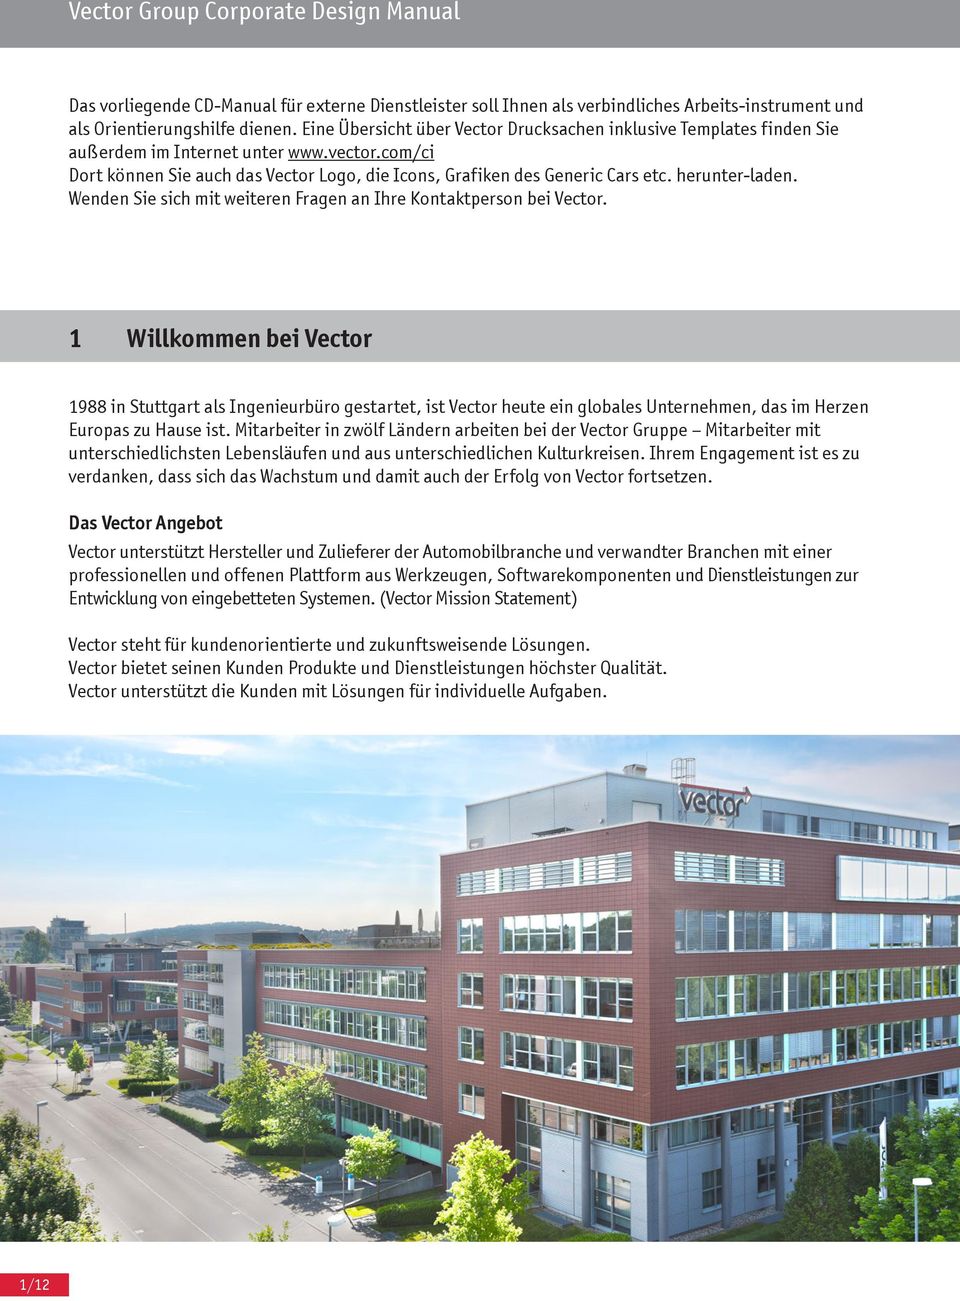 Wenden Sie sich mit weiteren Fragen an Ihre Kontaktperson bei. 1 Willkommen bei 1988 in Stuttgart als Ingenieurbüro gestartet, ist heute ein globales Unternehmen, das im Herzen Europas zu Hause ist.